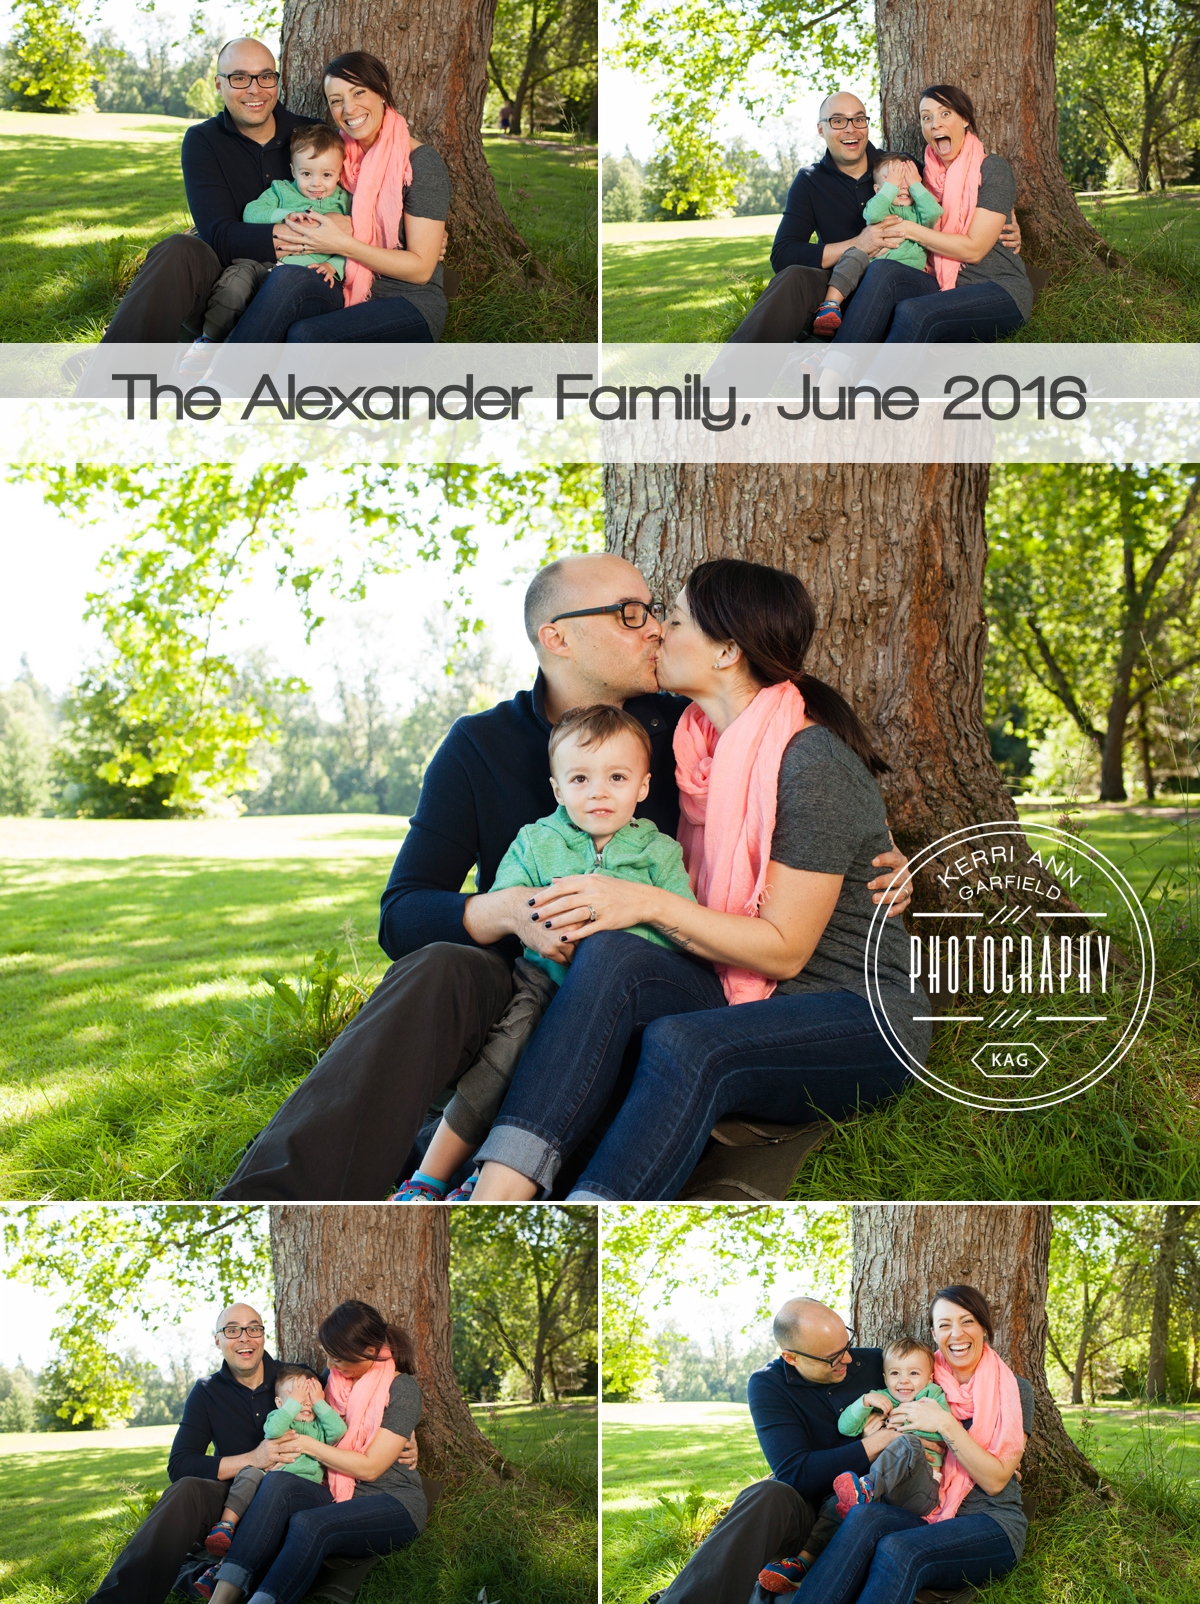 Family Photos in the Park by West Linn Photographer, Kerri Ann Garfield Photography